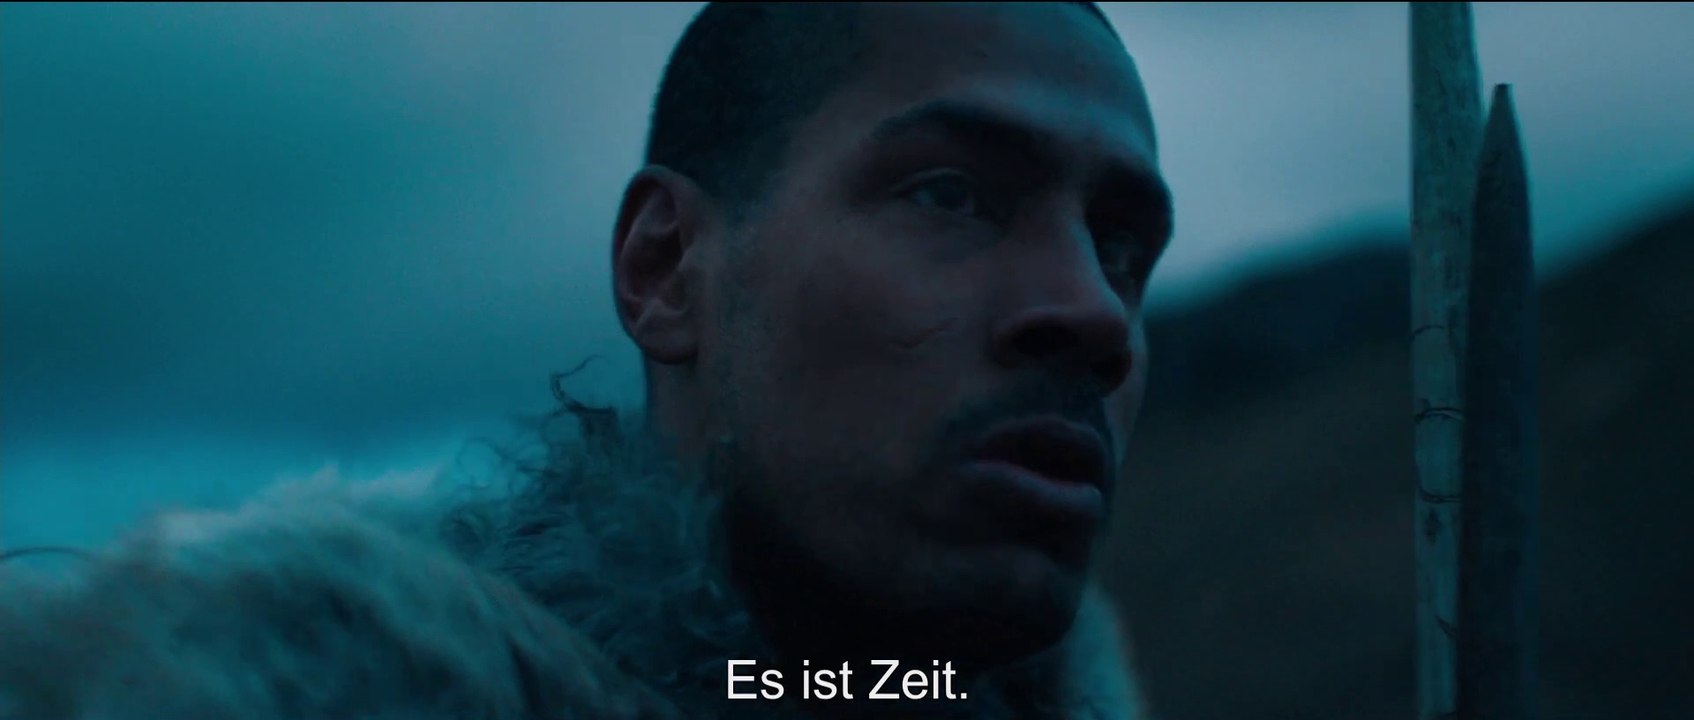 Out of Darkness - Trailer (Deutsche UT) HD